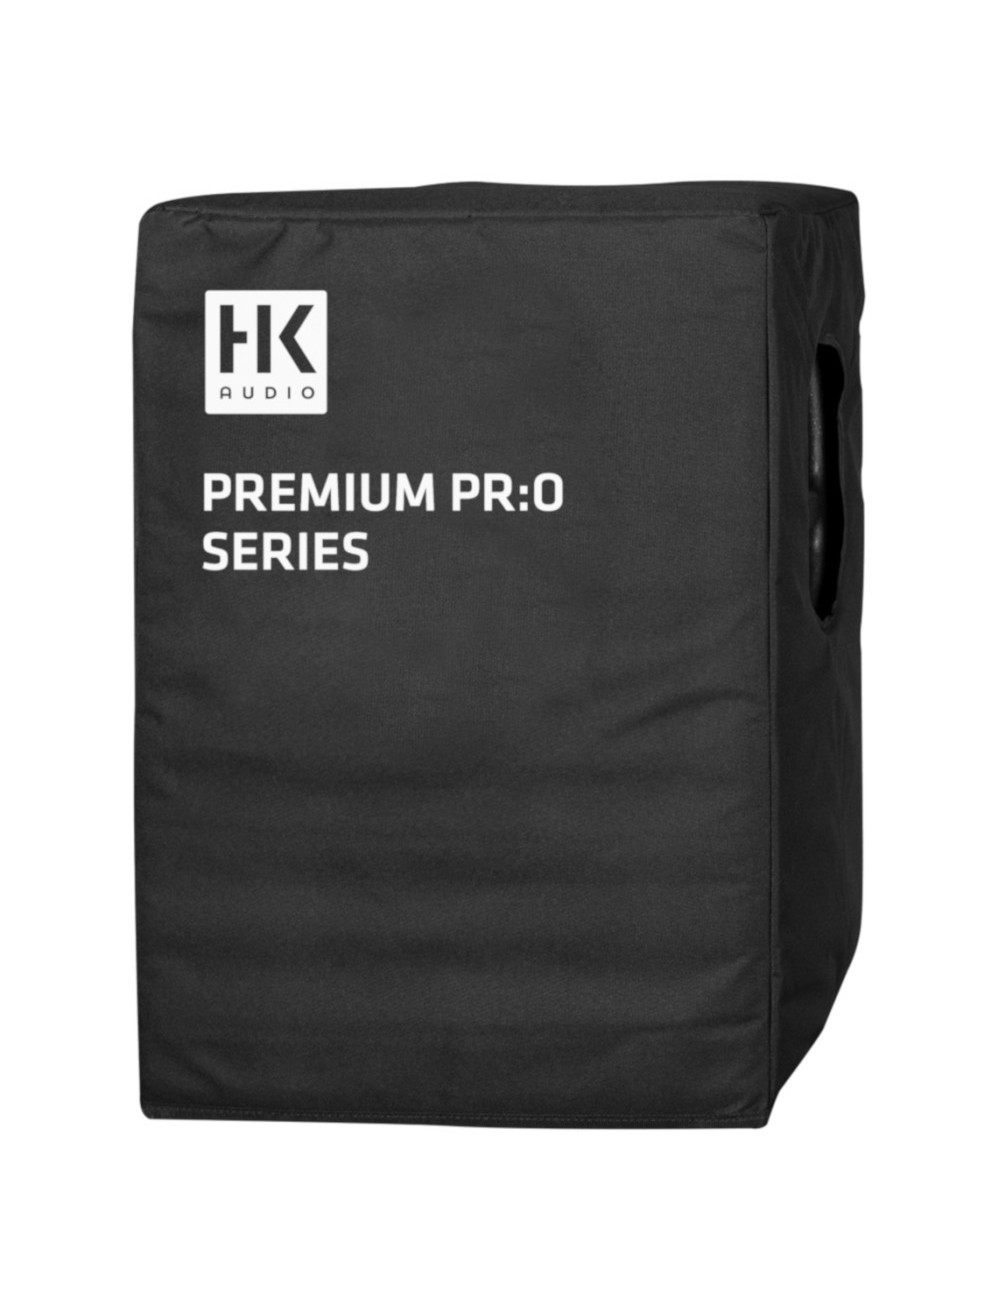 Pokrowiec ochronny na kolumnę HK Audio Premium PR:O 12